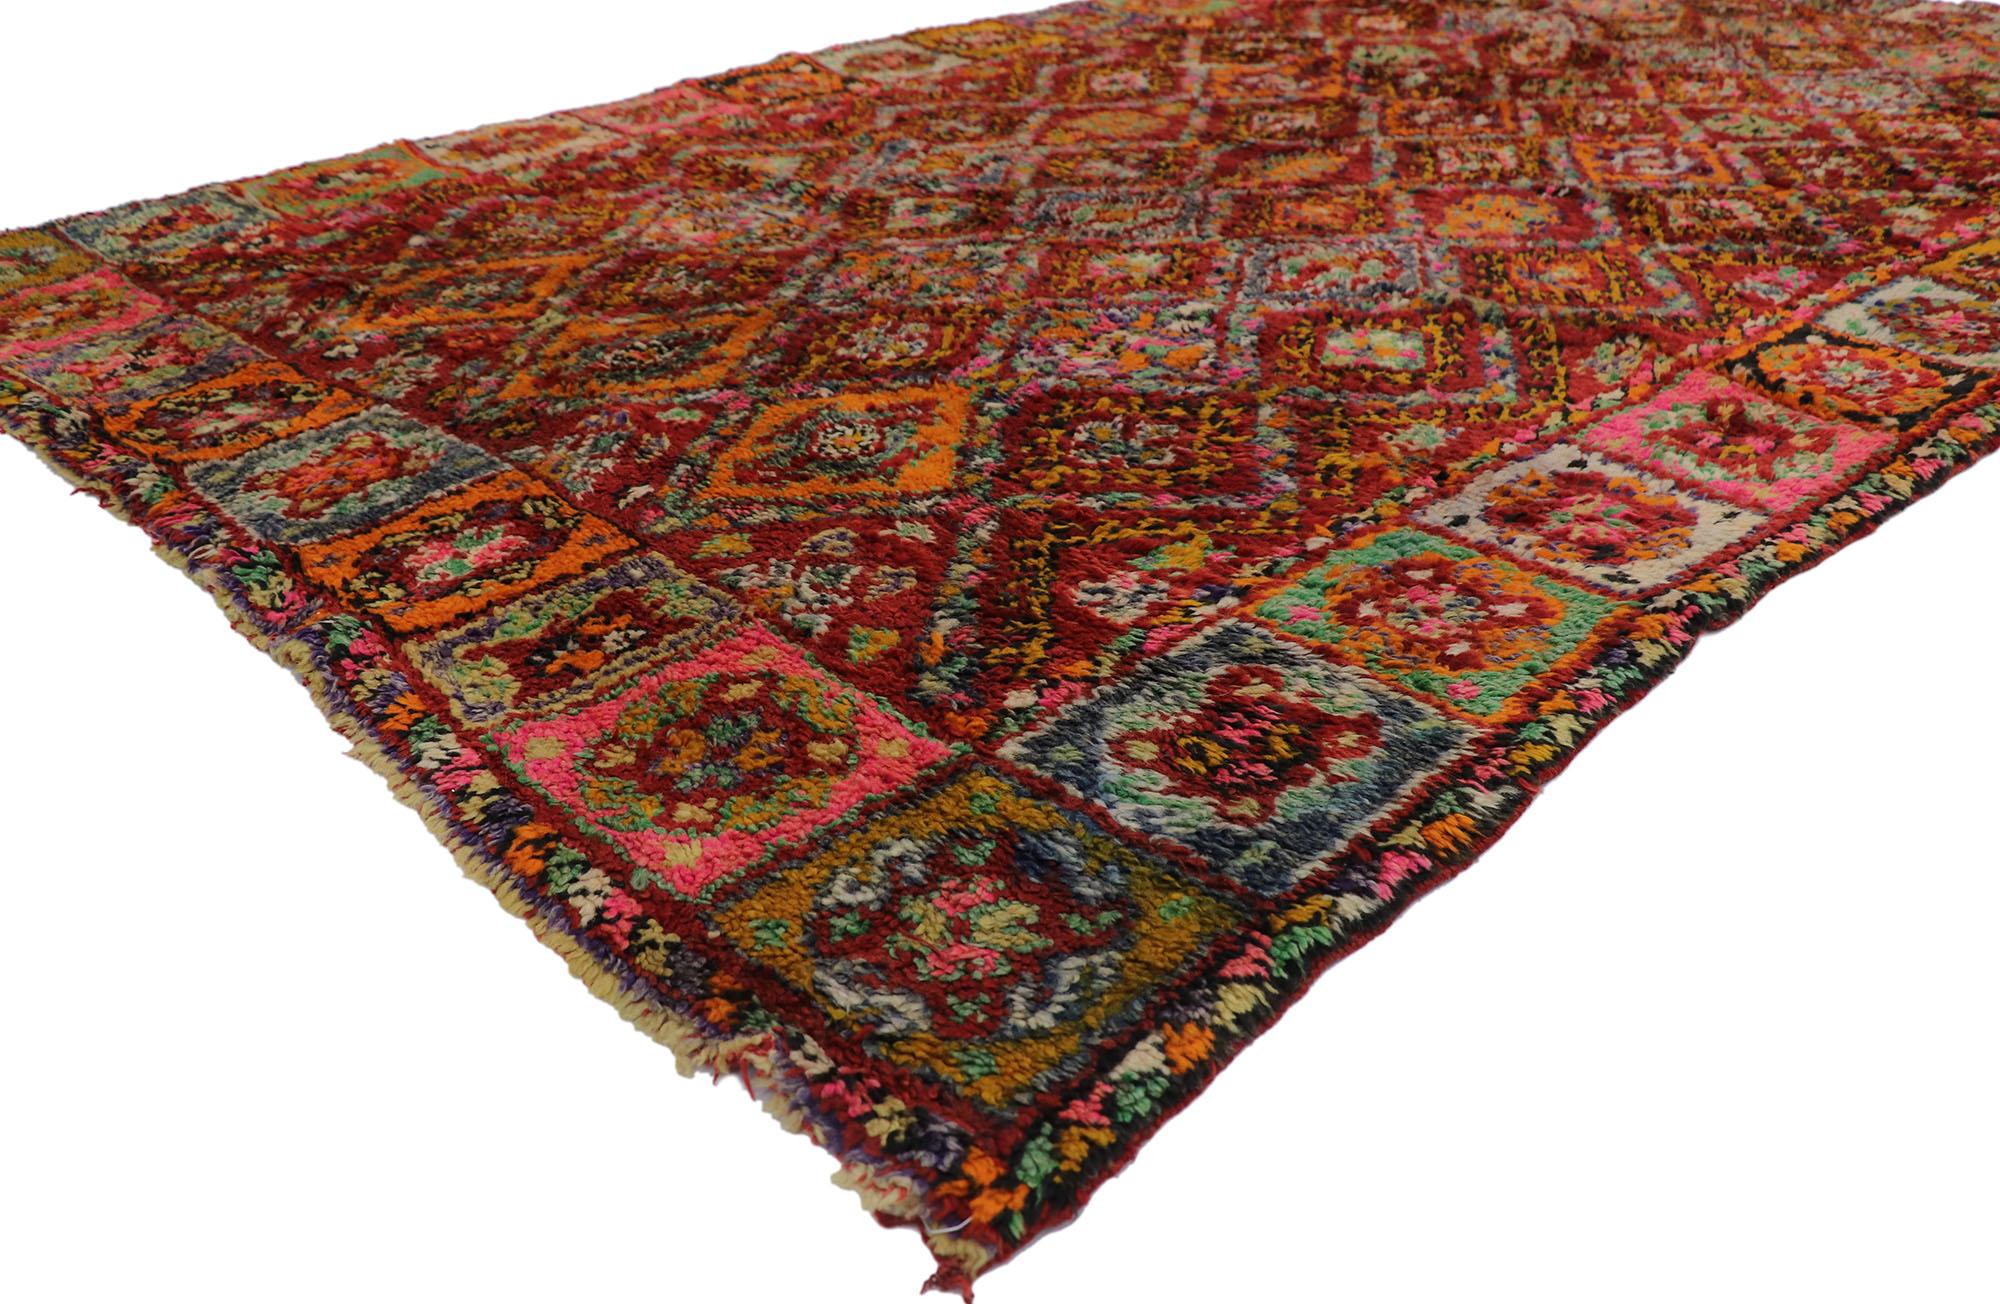 21491 Vintage Berber Marokko Teppich mit Bohemian Style 05'10 x 09'10. Dieser handgeknüpfte marokkanische Beni M'Guild-Teppich aus alter Berberwolle besticht durch sein kühnes, ausdrucksstarkes Design, seine unglaublichen Details und seine Struktur.